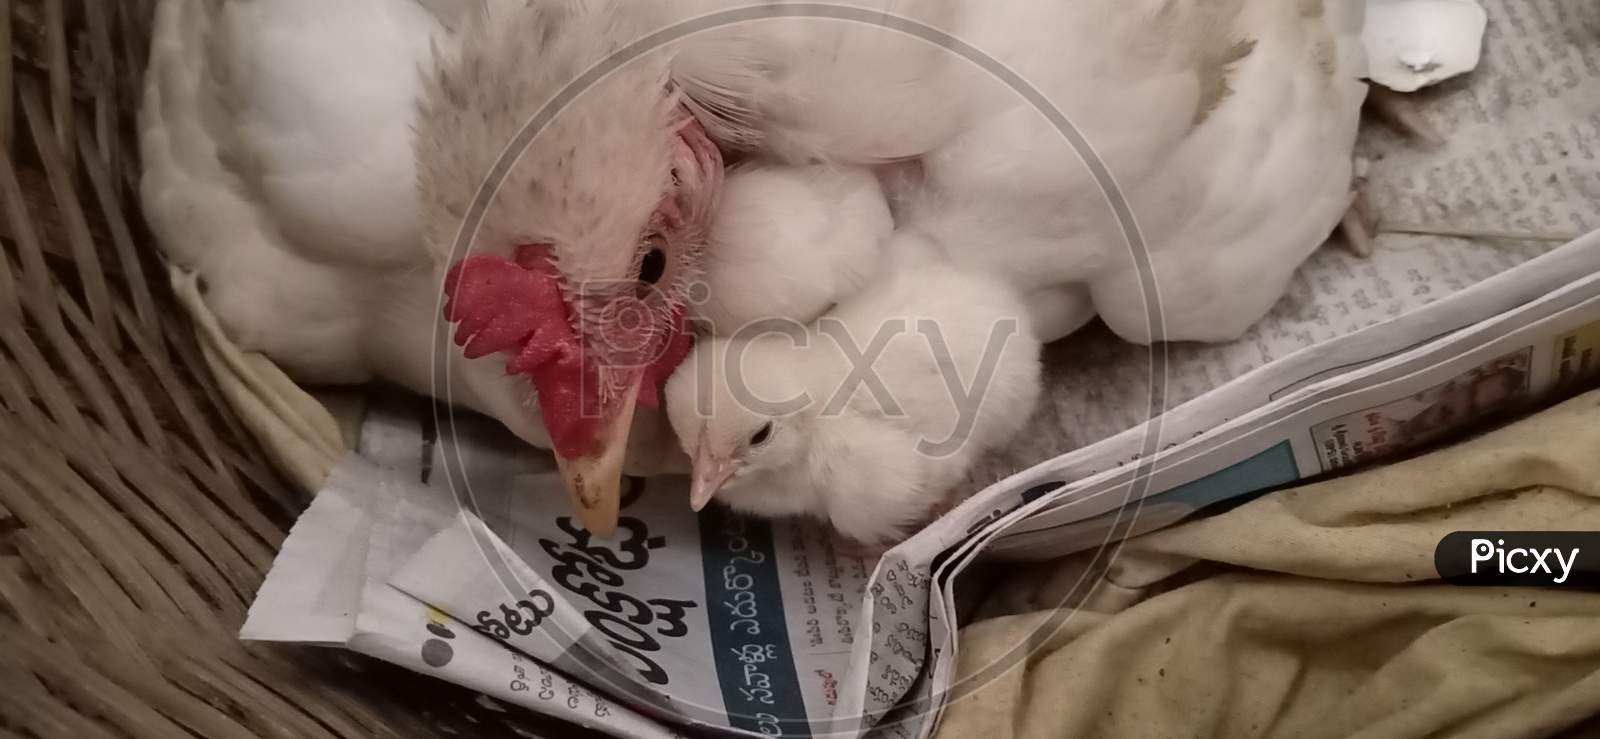 just born baby chicken